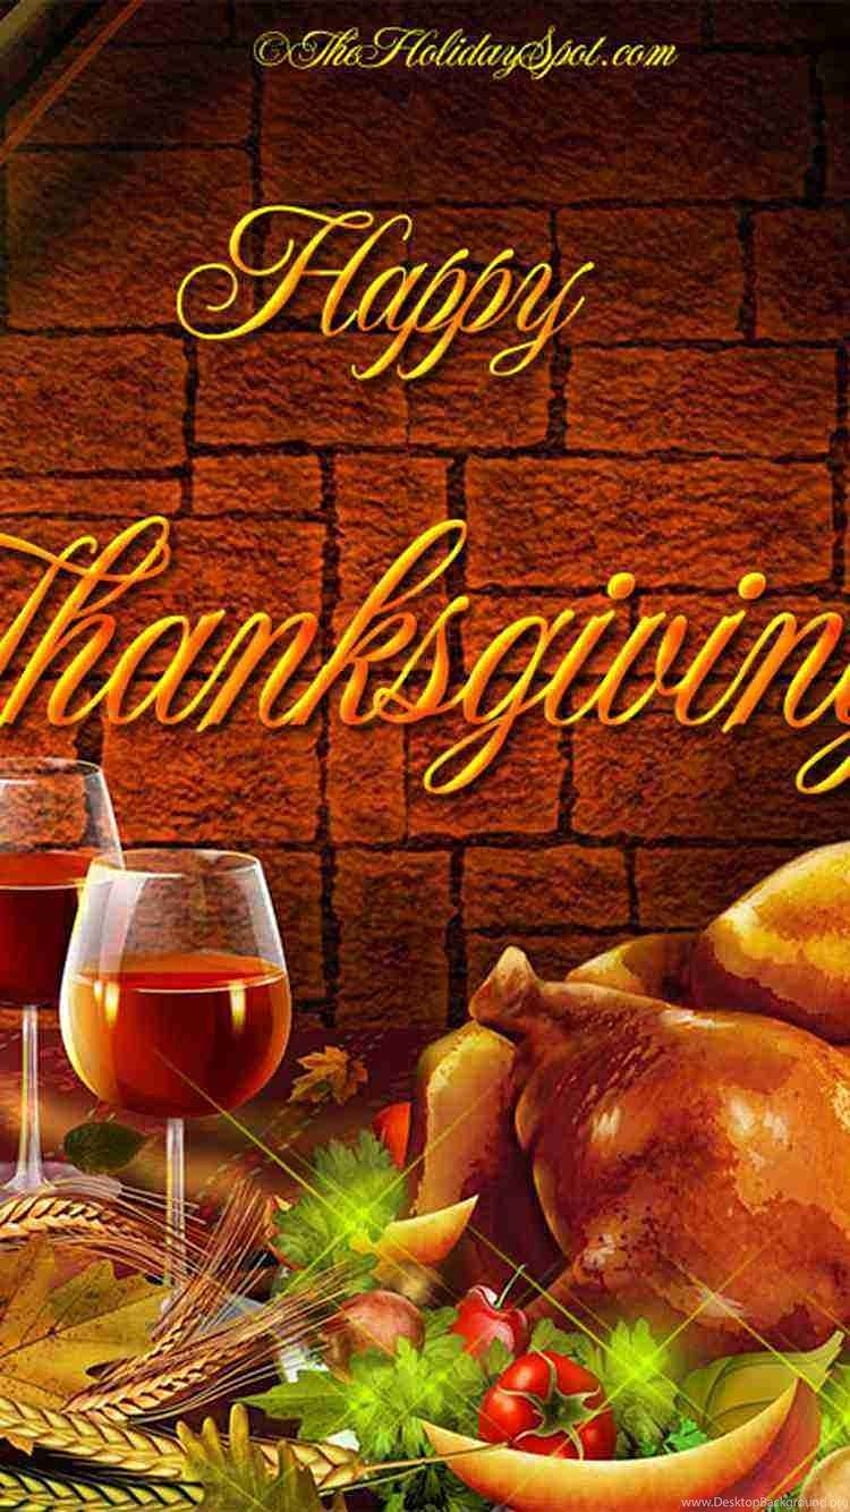 Fabulous 2015 Thanksgiving Turkey Dinner Table iPhone 6 ... Backgrounds, iphone thanksgiving HD phone wallpaper